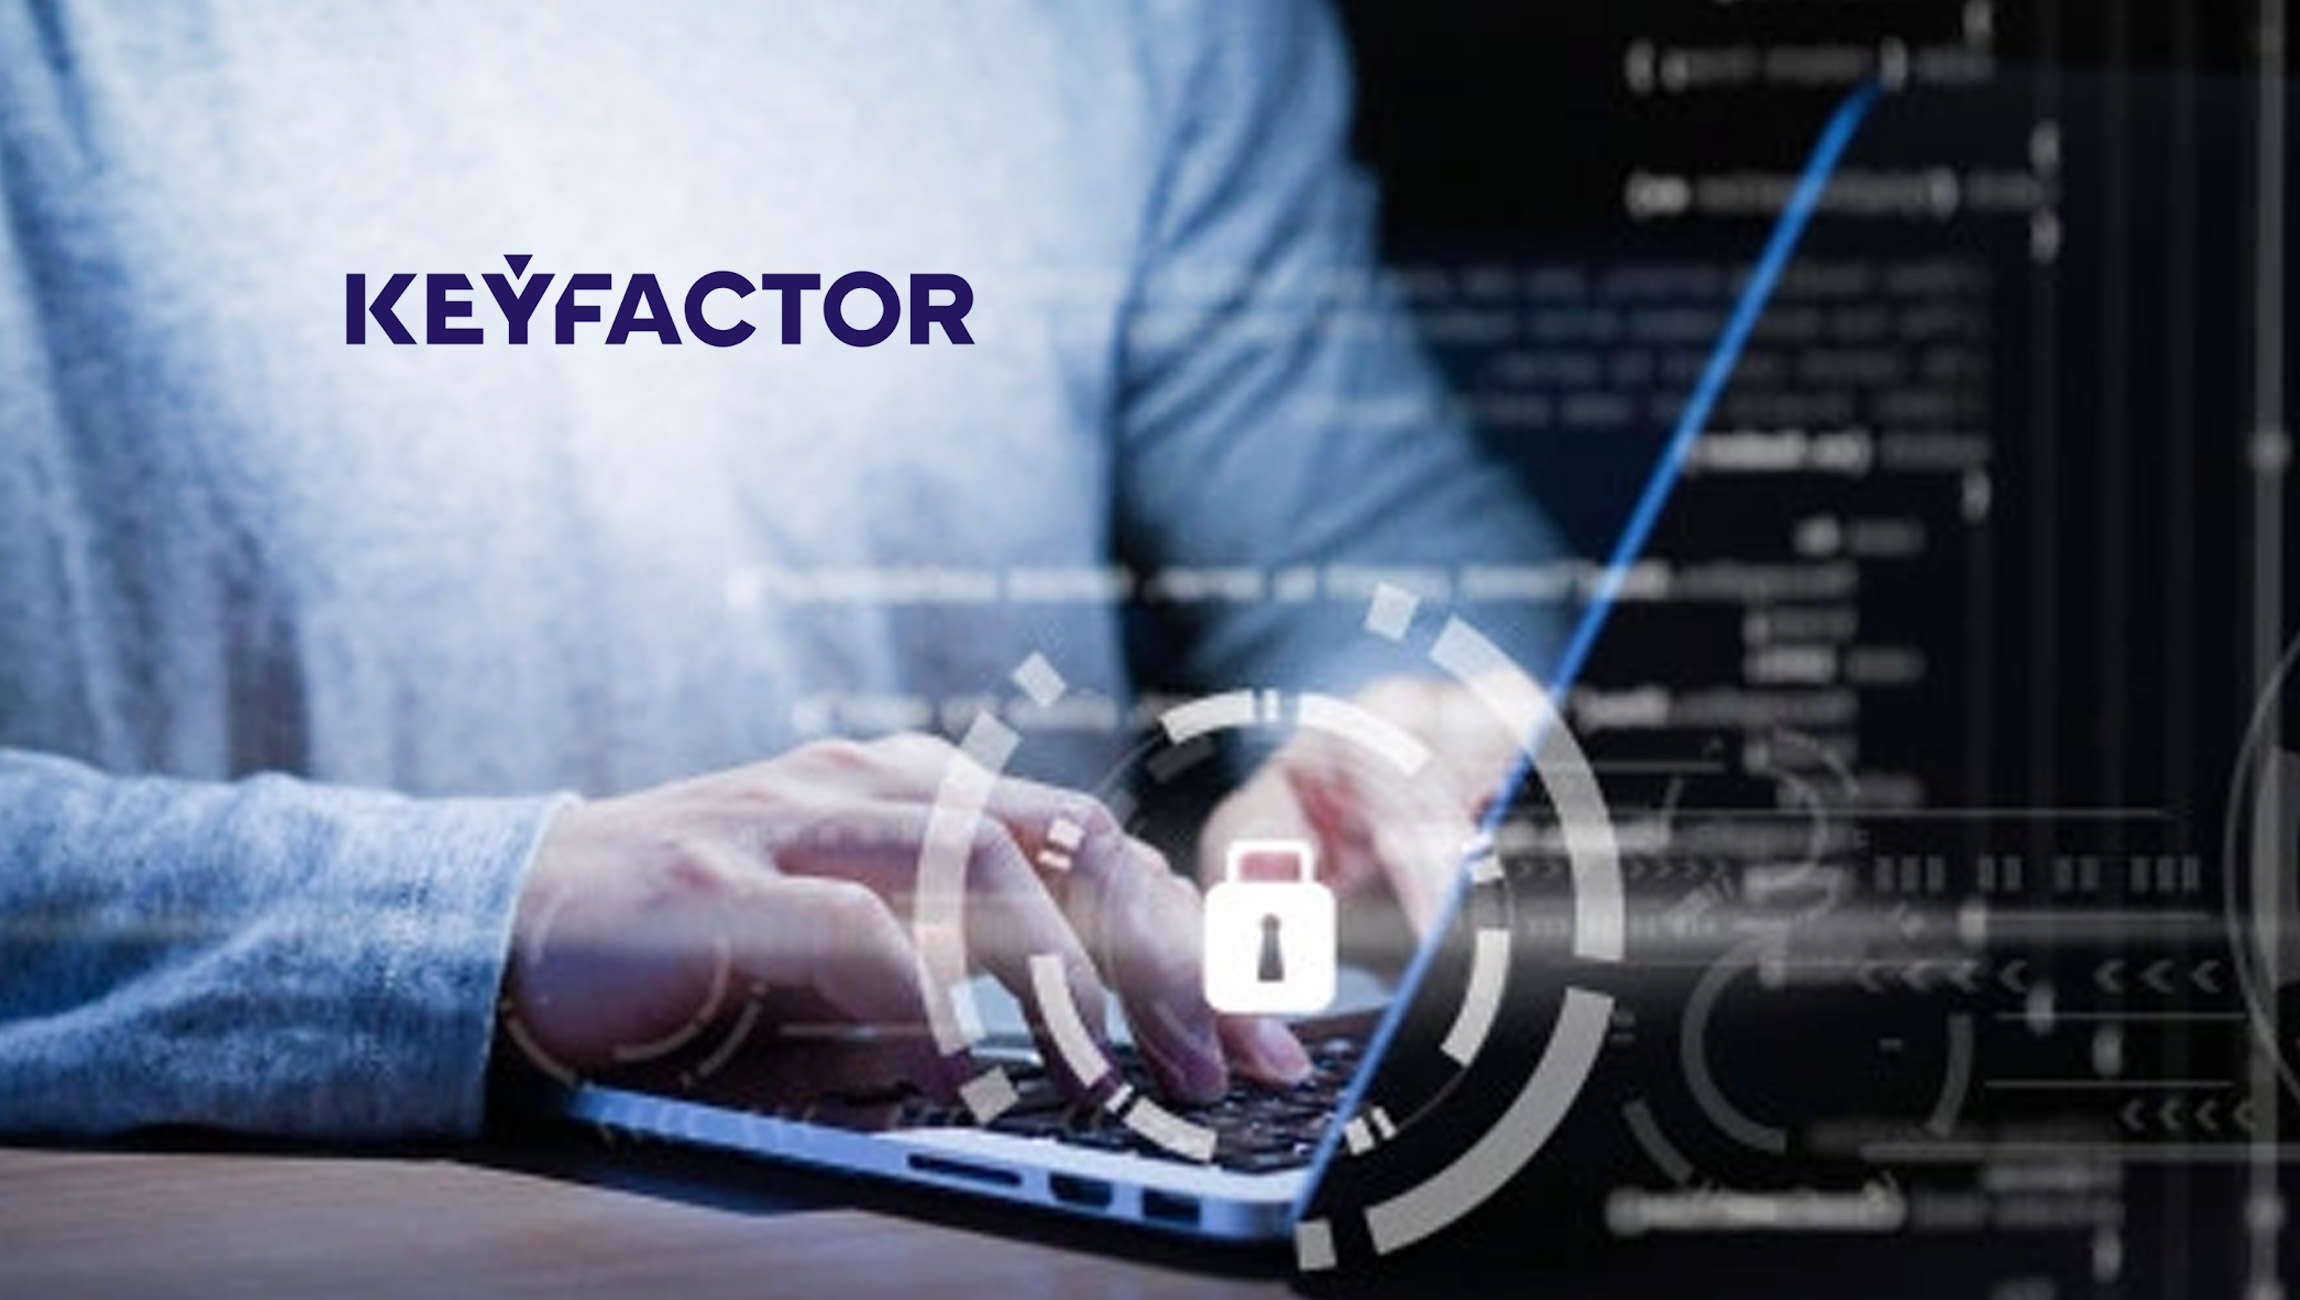 Keyfactor signe un partenariat technologique avec Eviden et intègre Trustway ProteccioTM, seul HSM possédant la Qualification Renforcée de l’ANSSI, à sa plateforme PKI